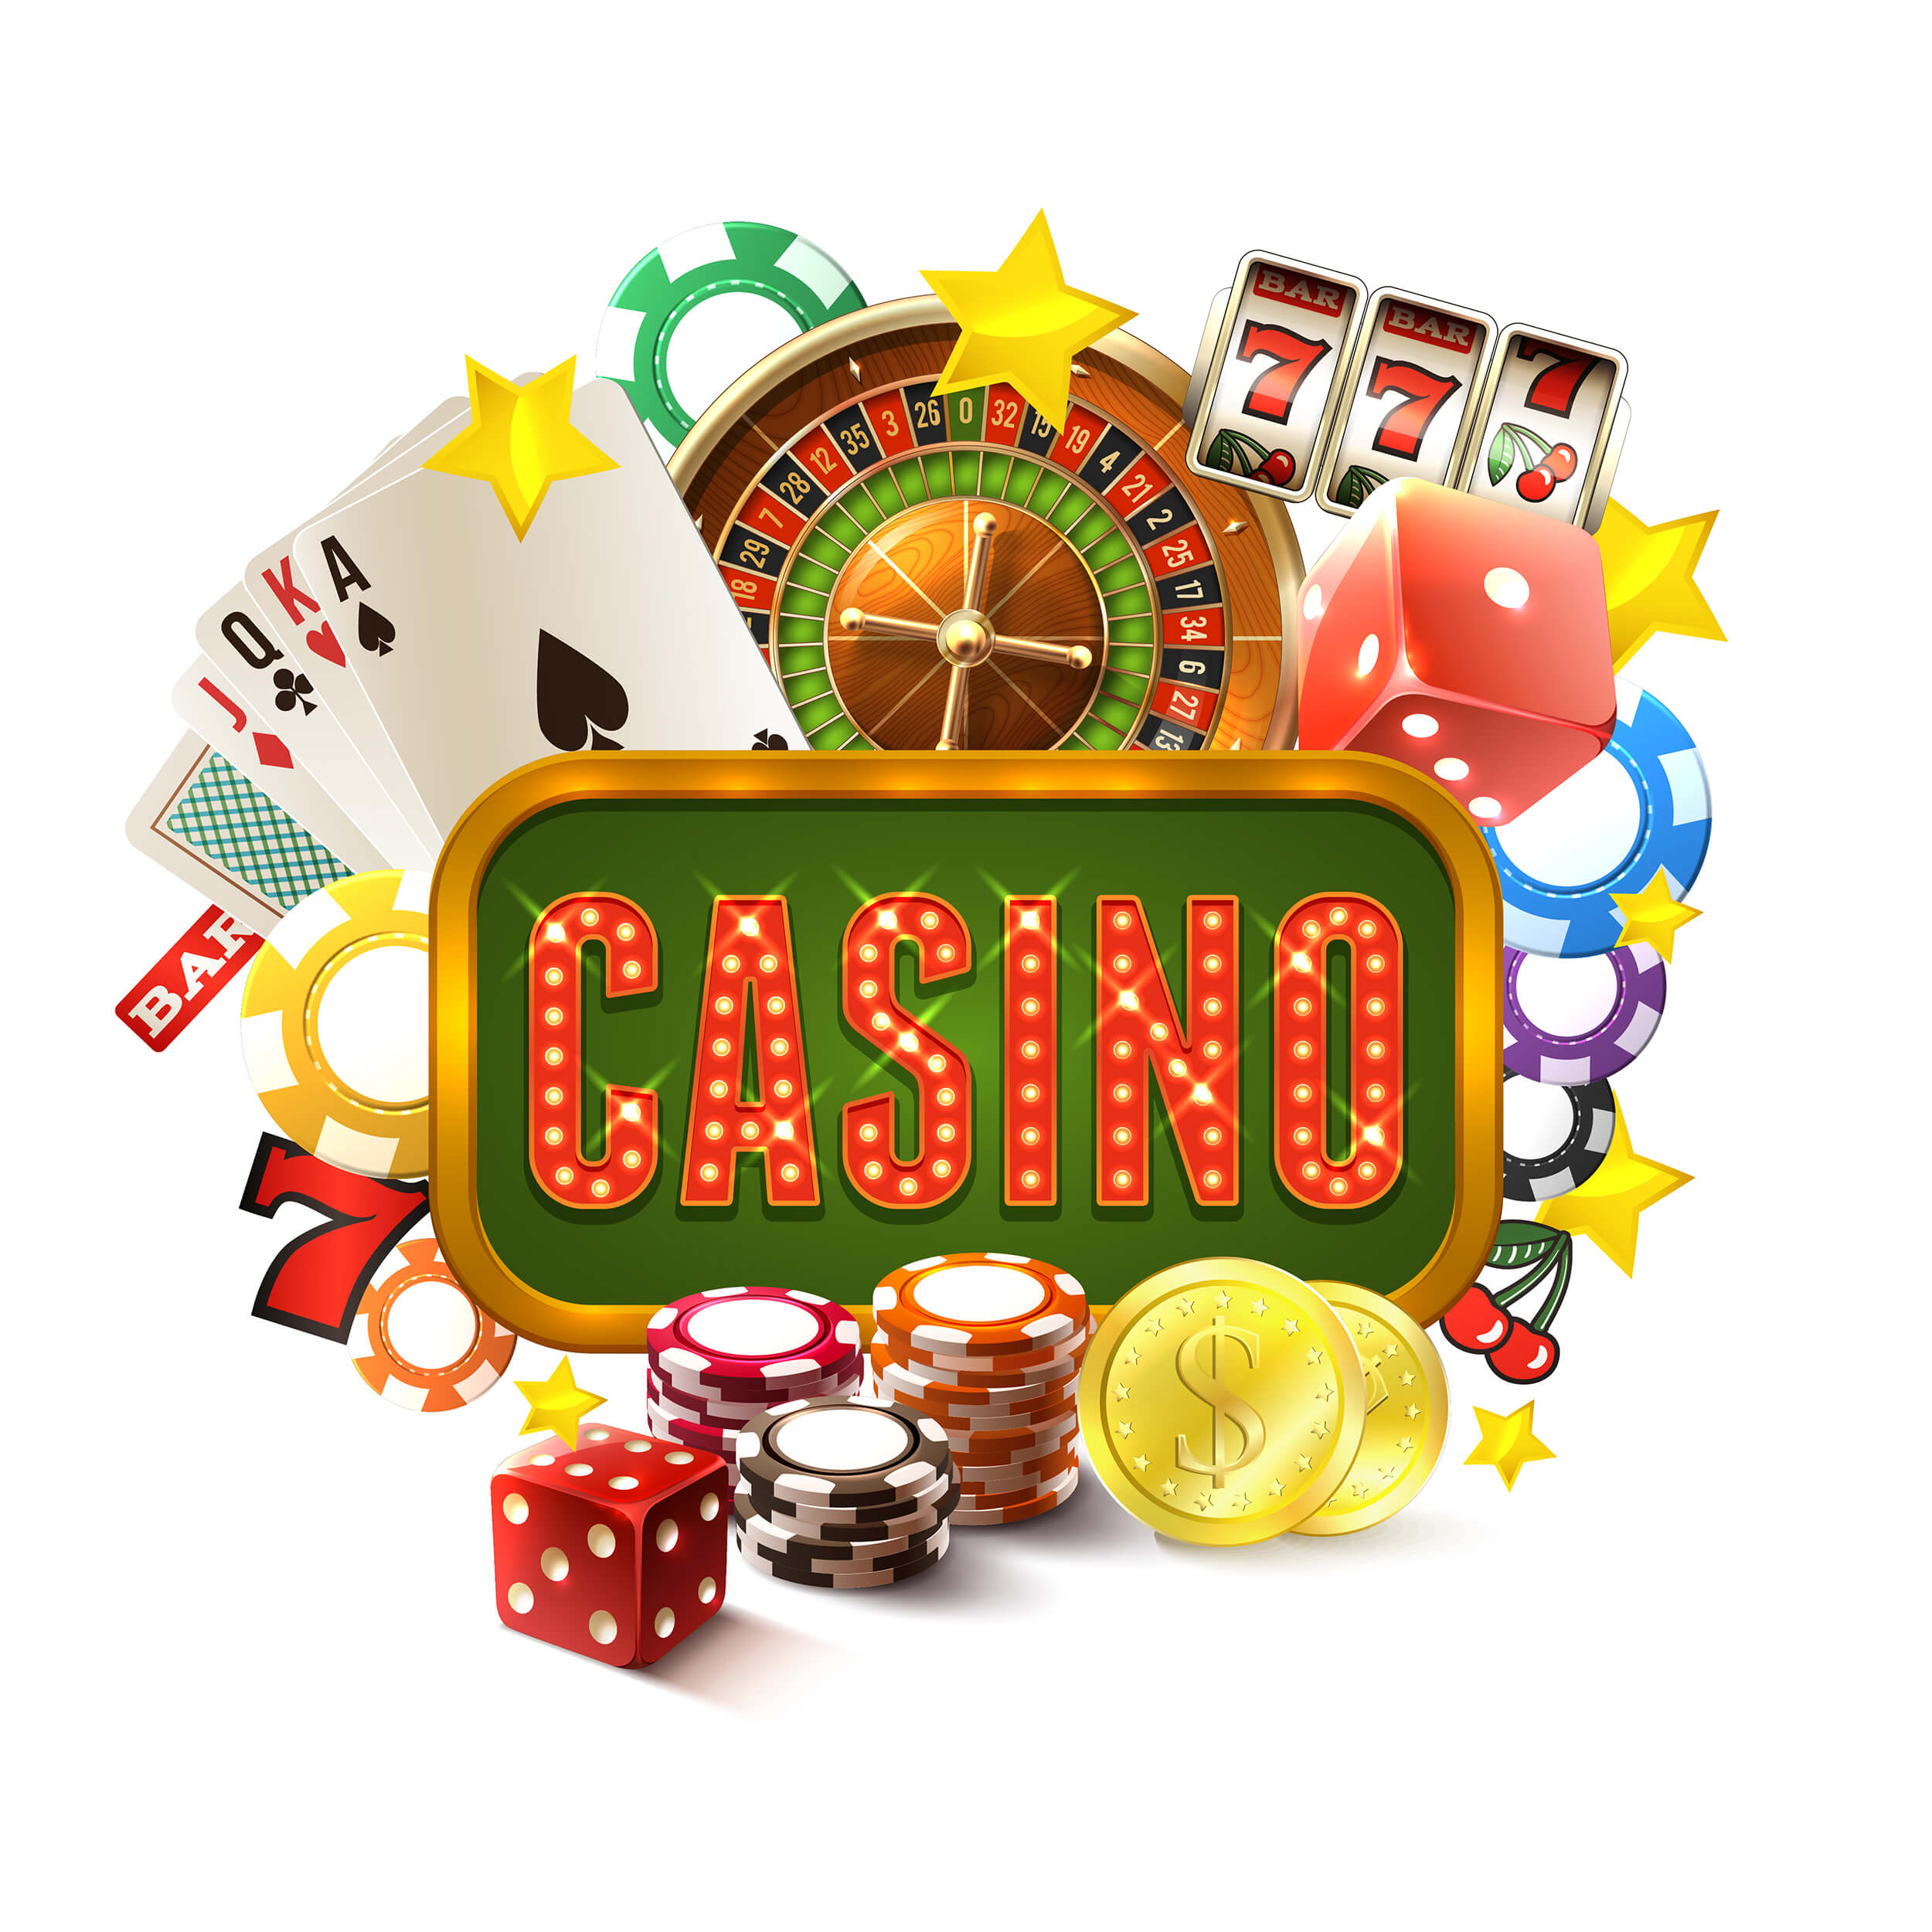 Landmark-Casino